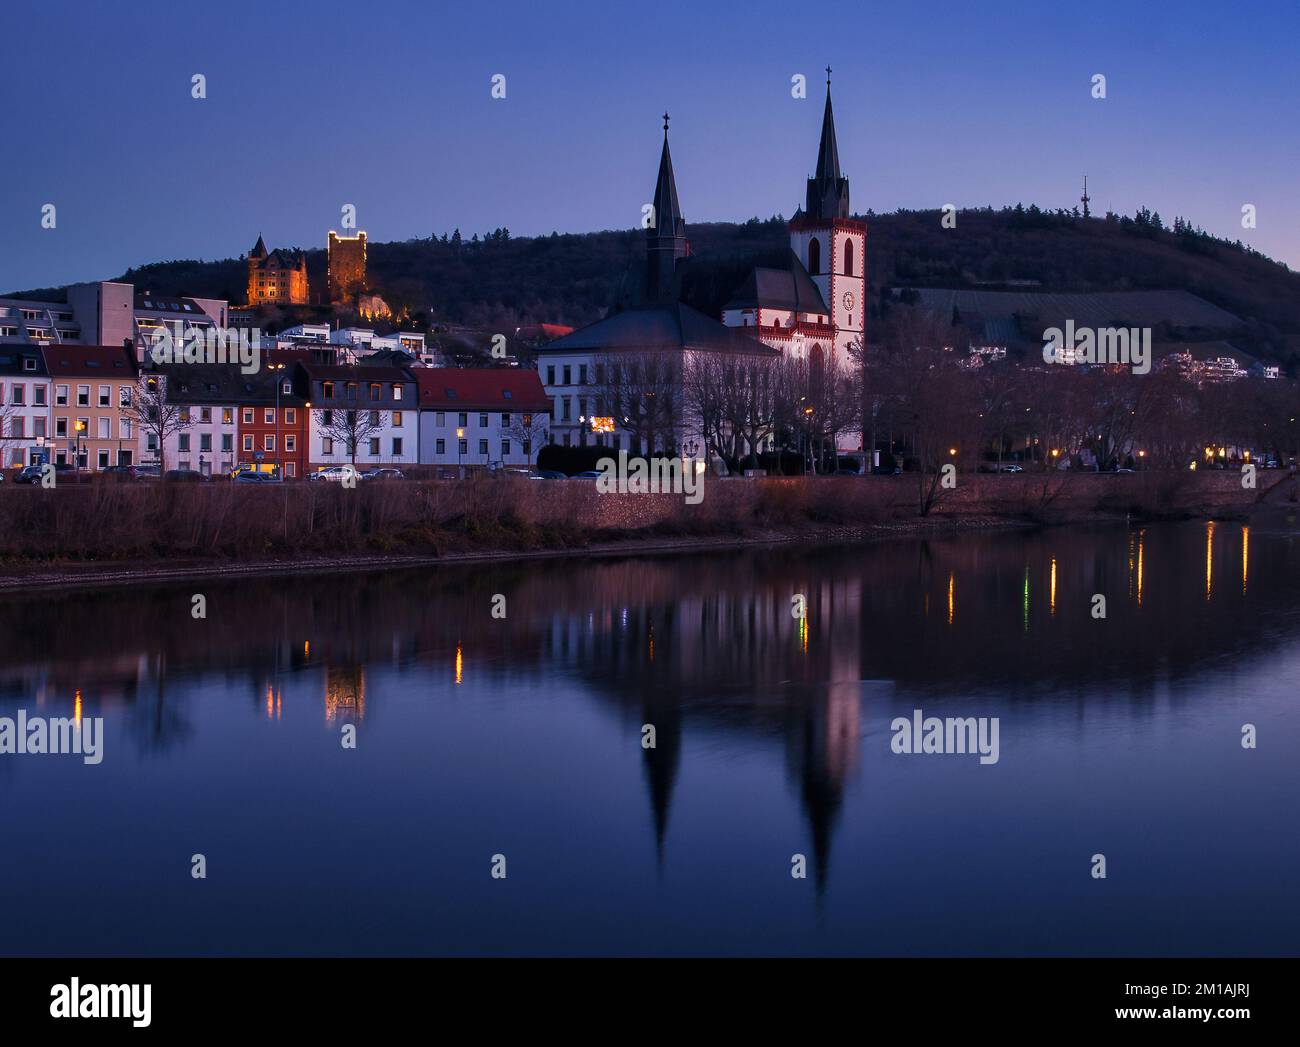 Bingen am Rhein, Allemagne - 10 janvier 2021 : la basilique Saint-Laurent L'église Martin et d'autres bâtiments à côté de la rivière Rhein et du château de Klopp s'illuminent Banque D'Images